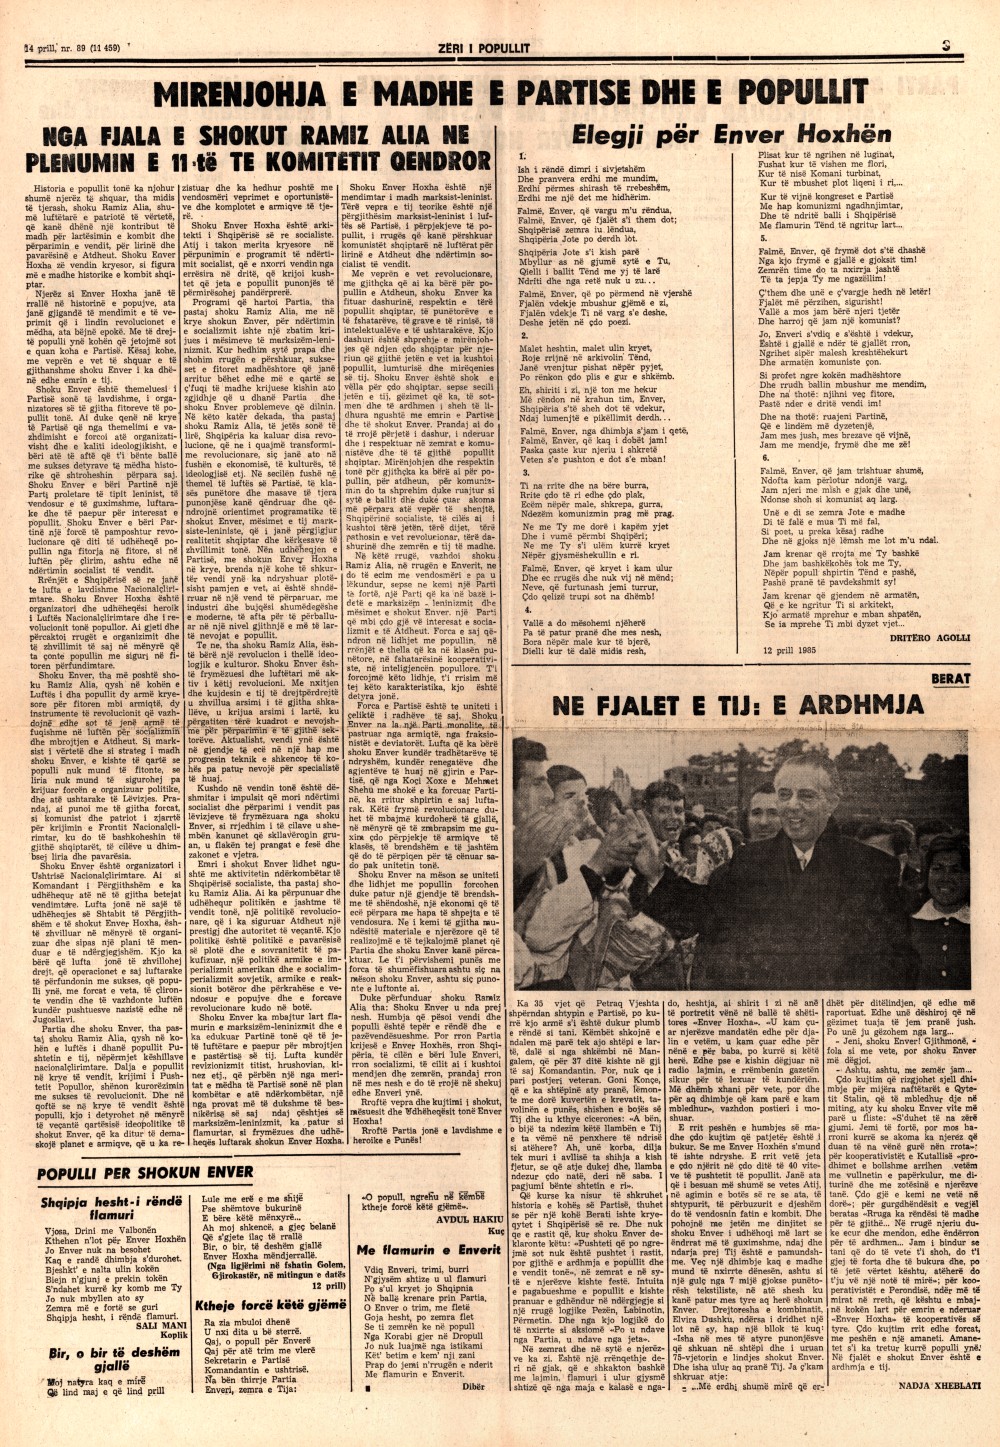 Газета "Зери и популлит" от 14 апреля 1985 года (третья полоса)